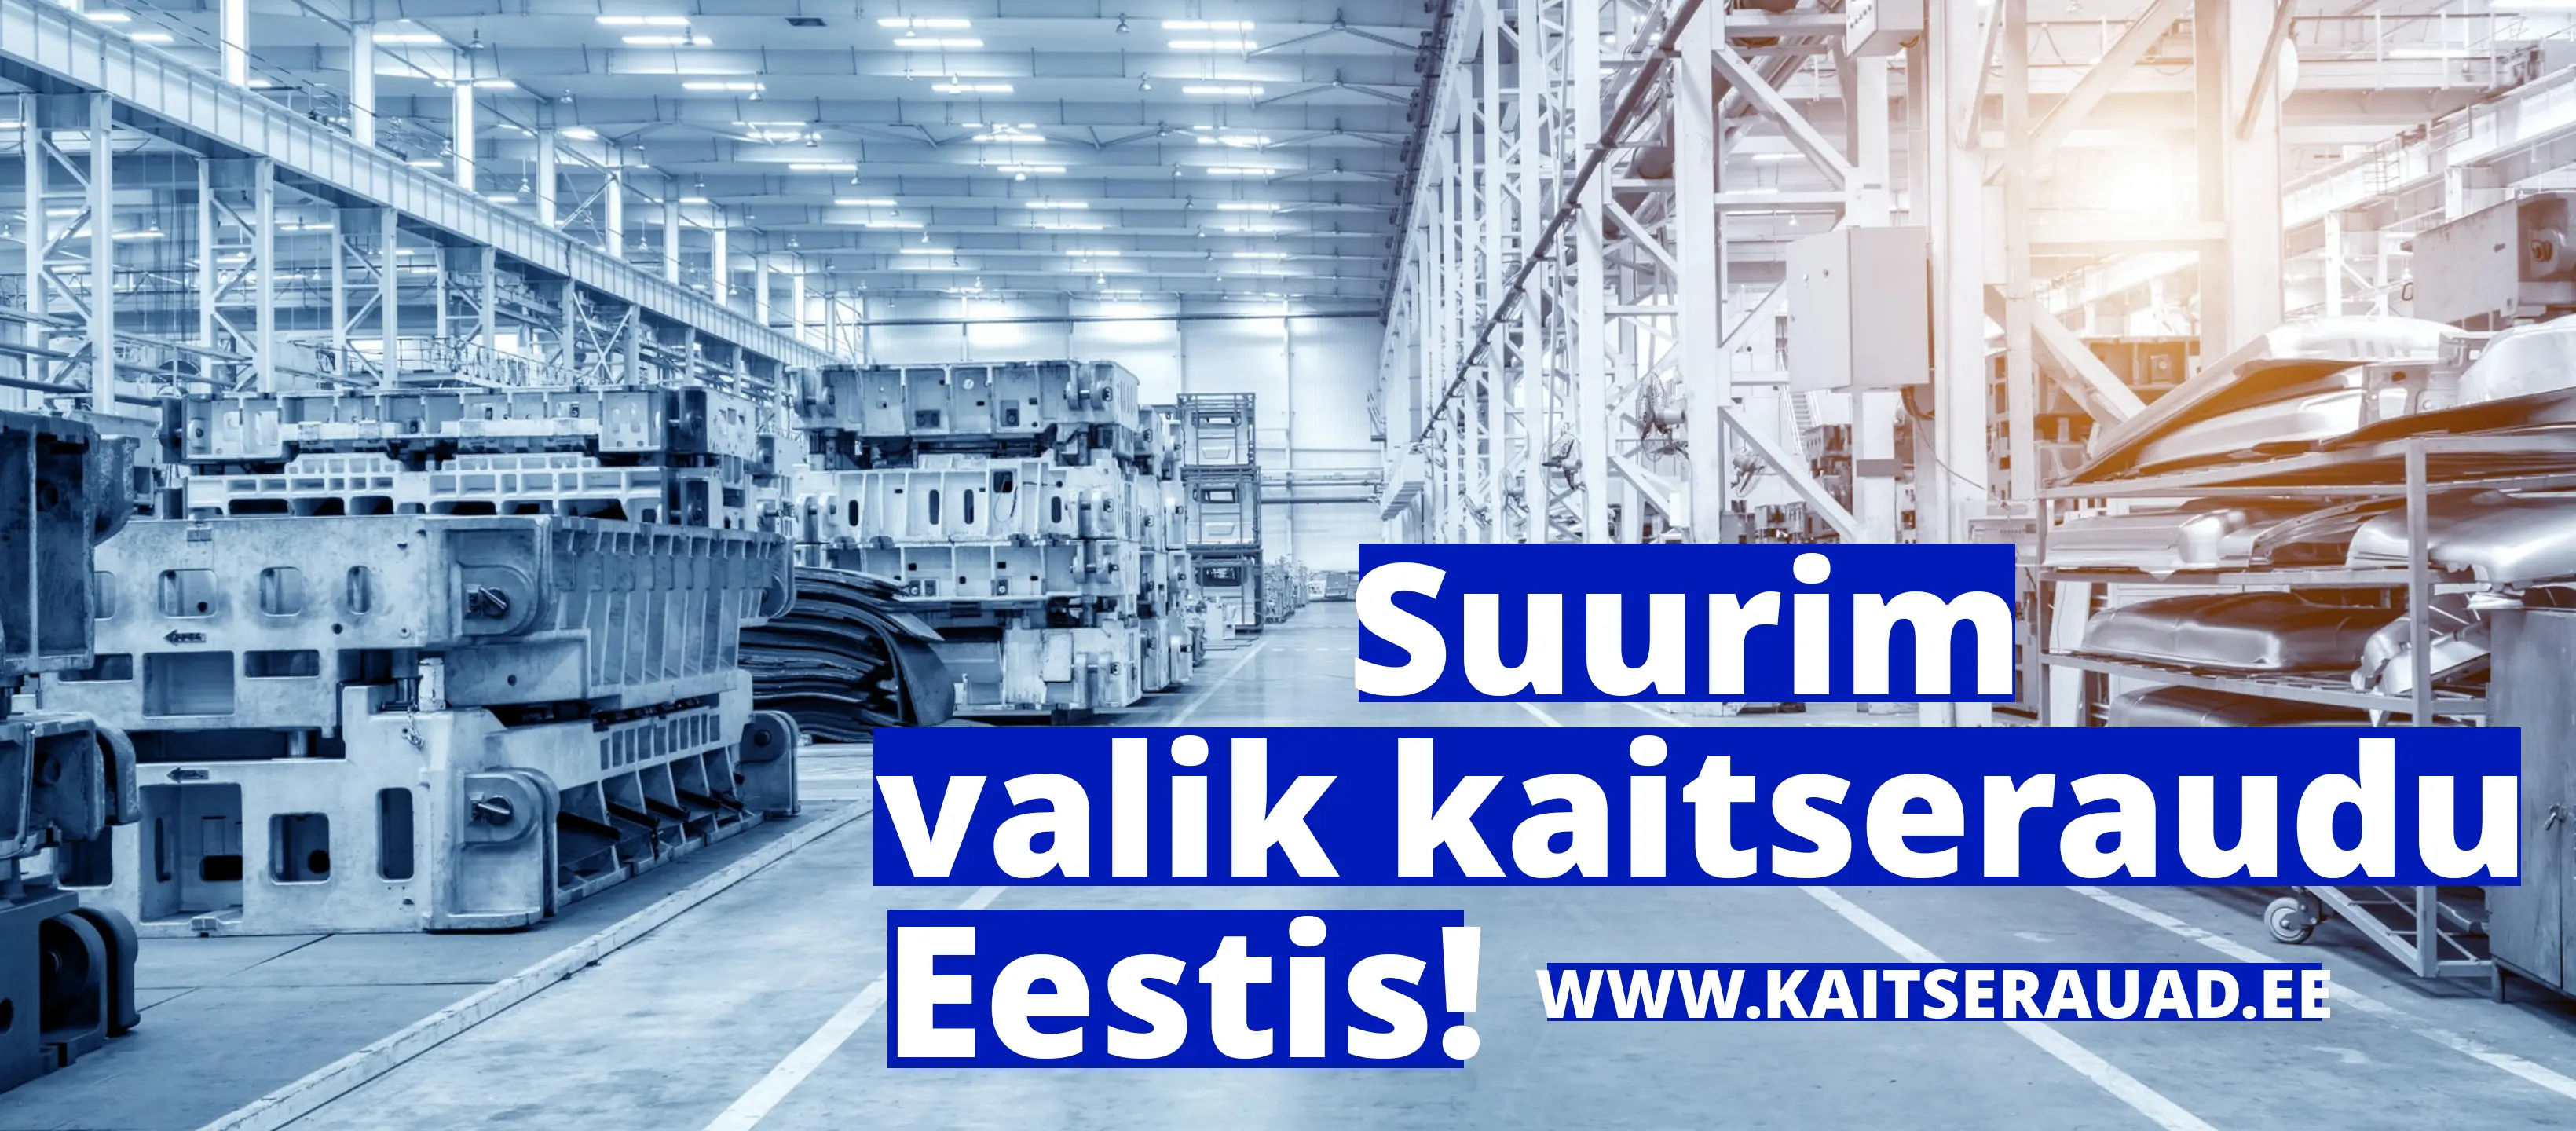 Suurim valik kaitseraudu Eestis - www.kaitserauad.ee